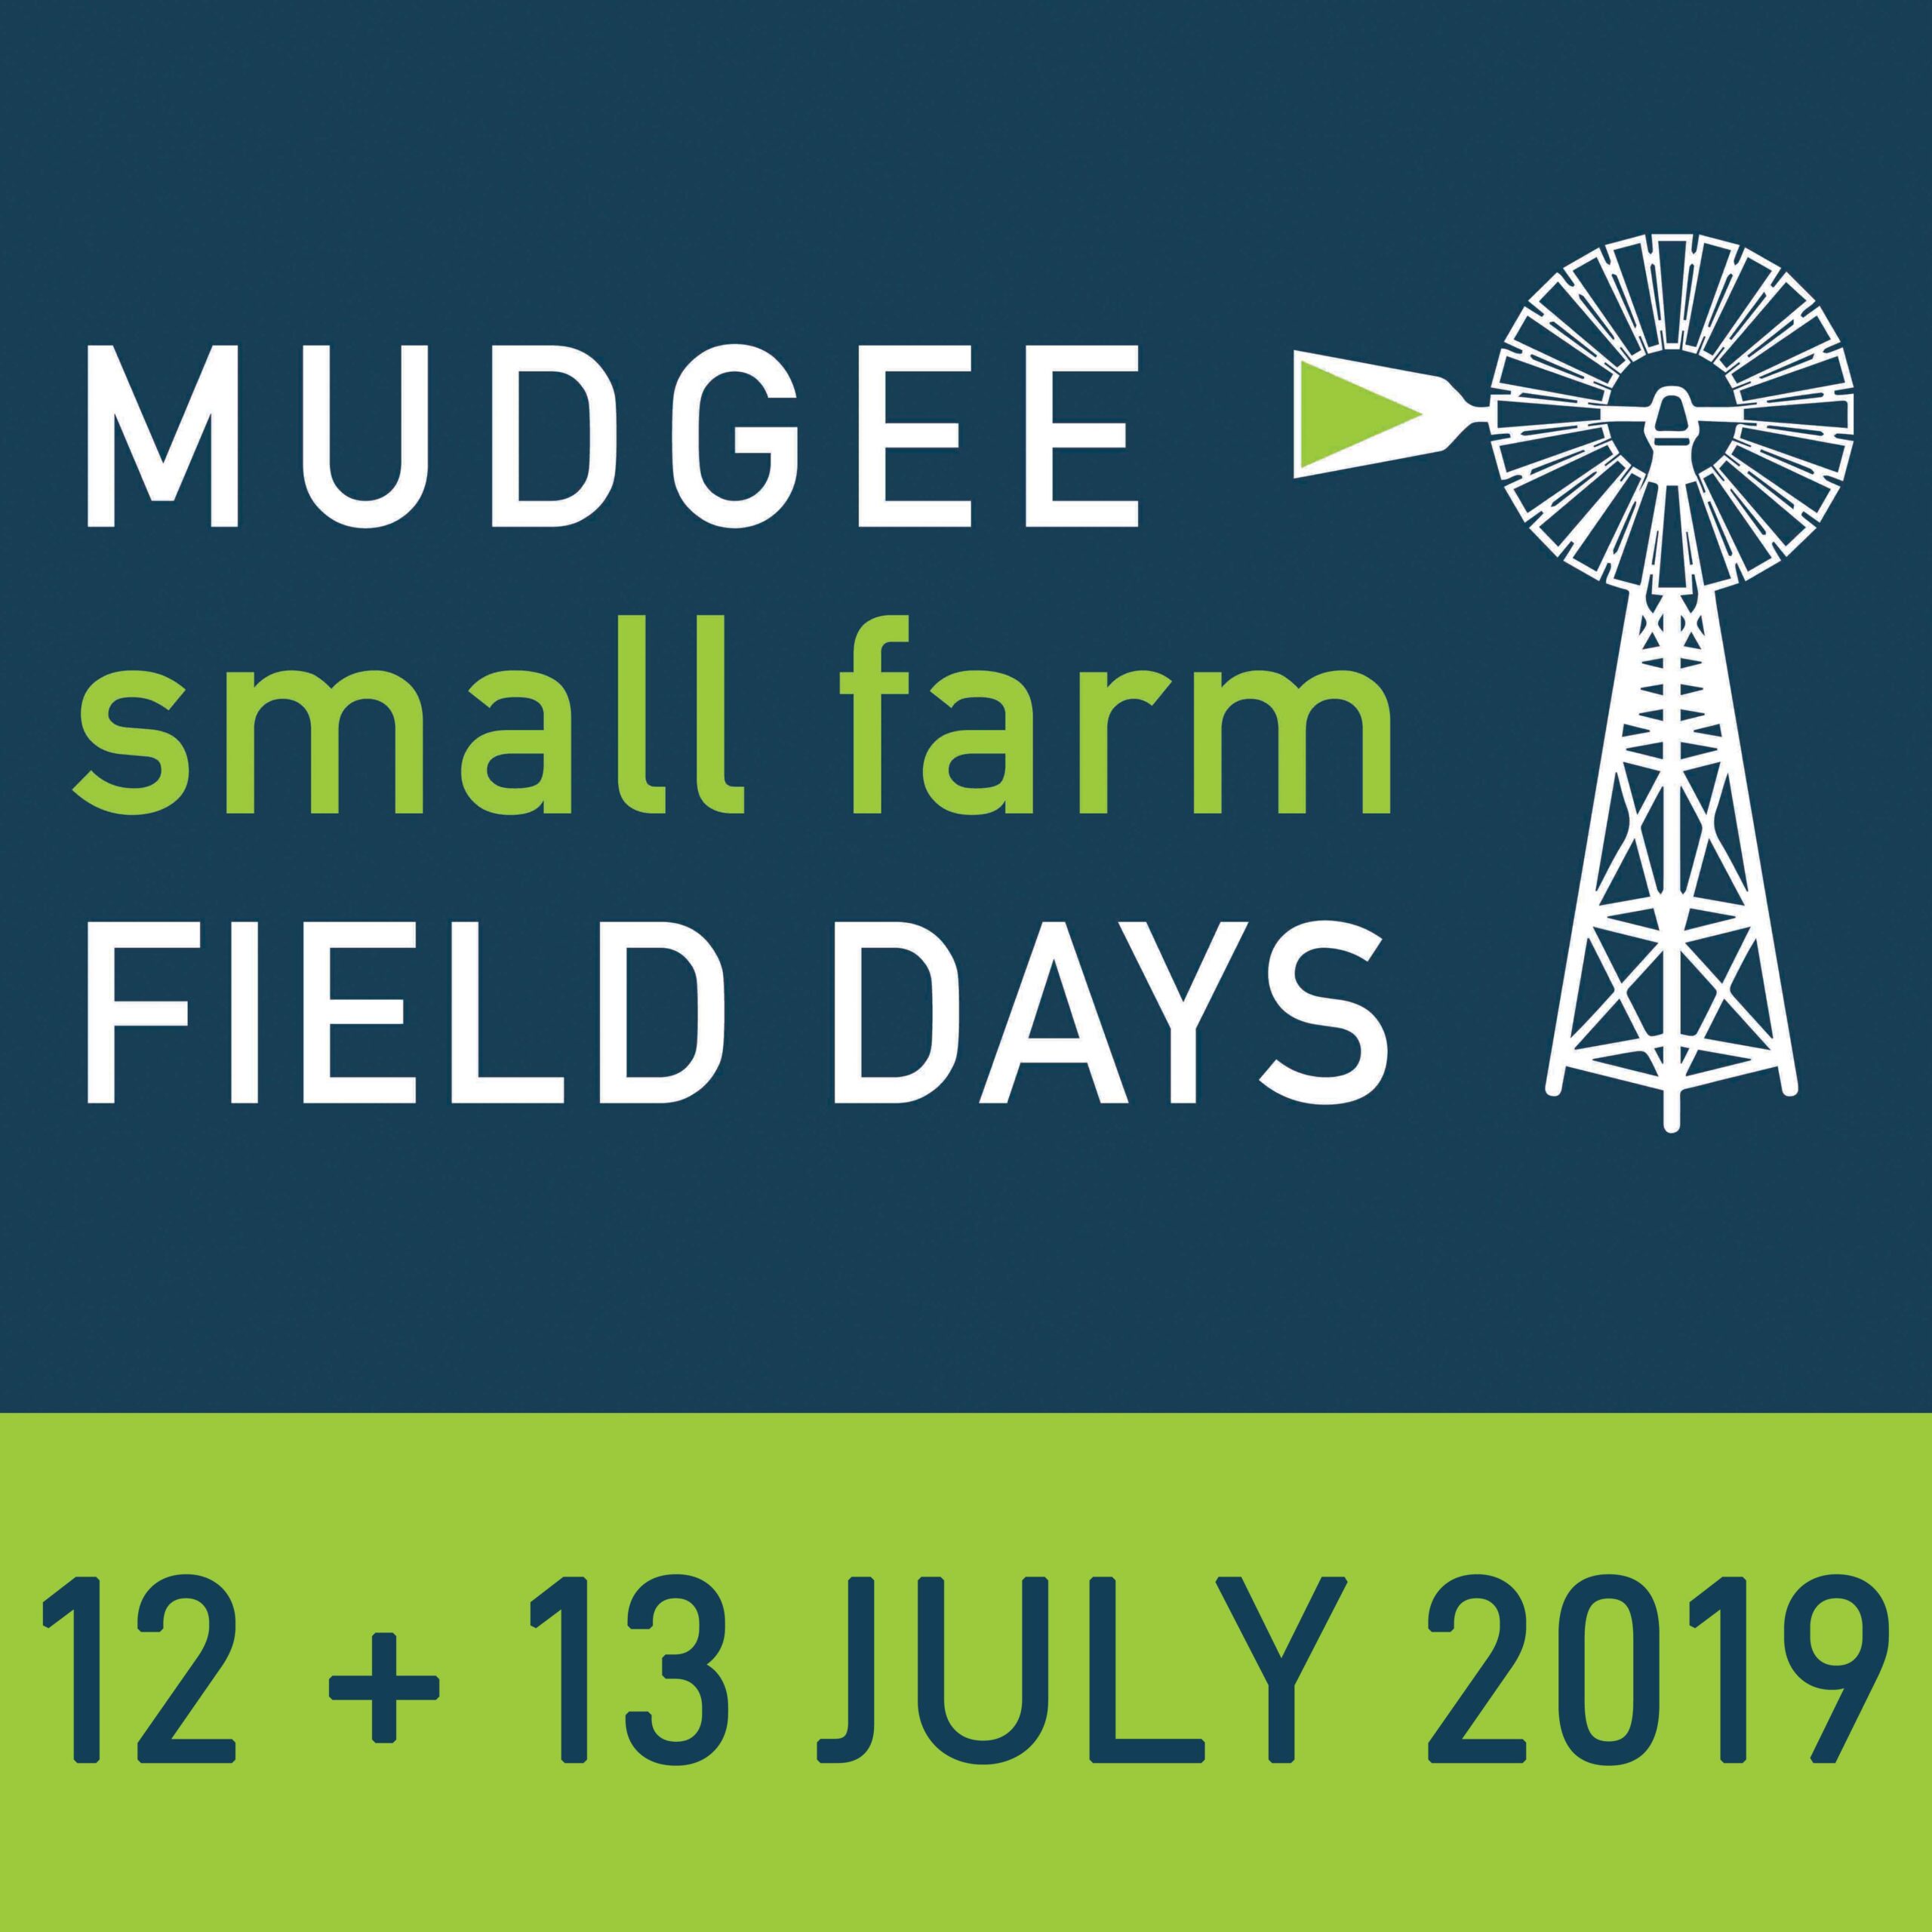 Mudgee small farm field days